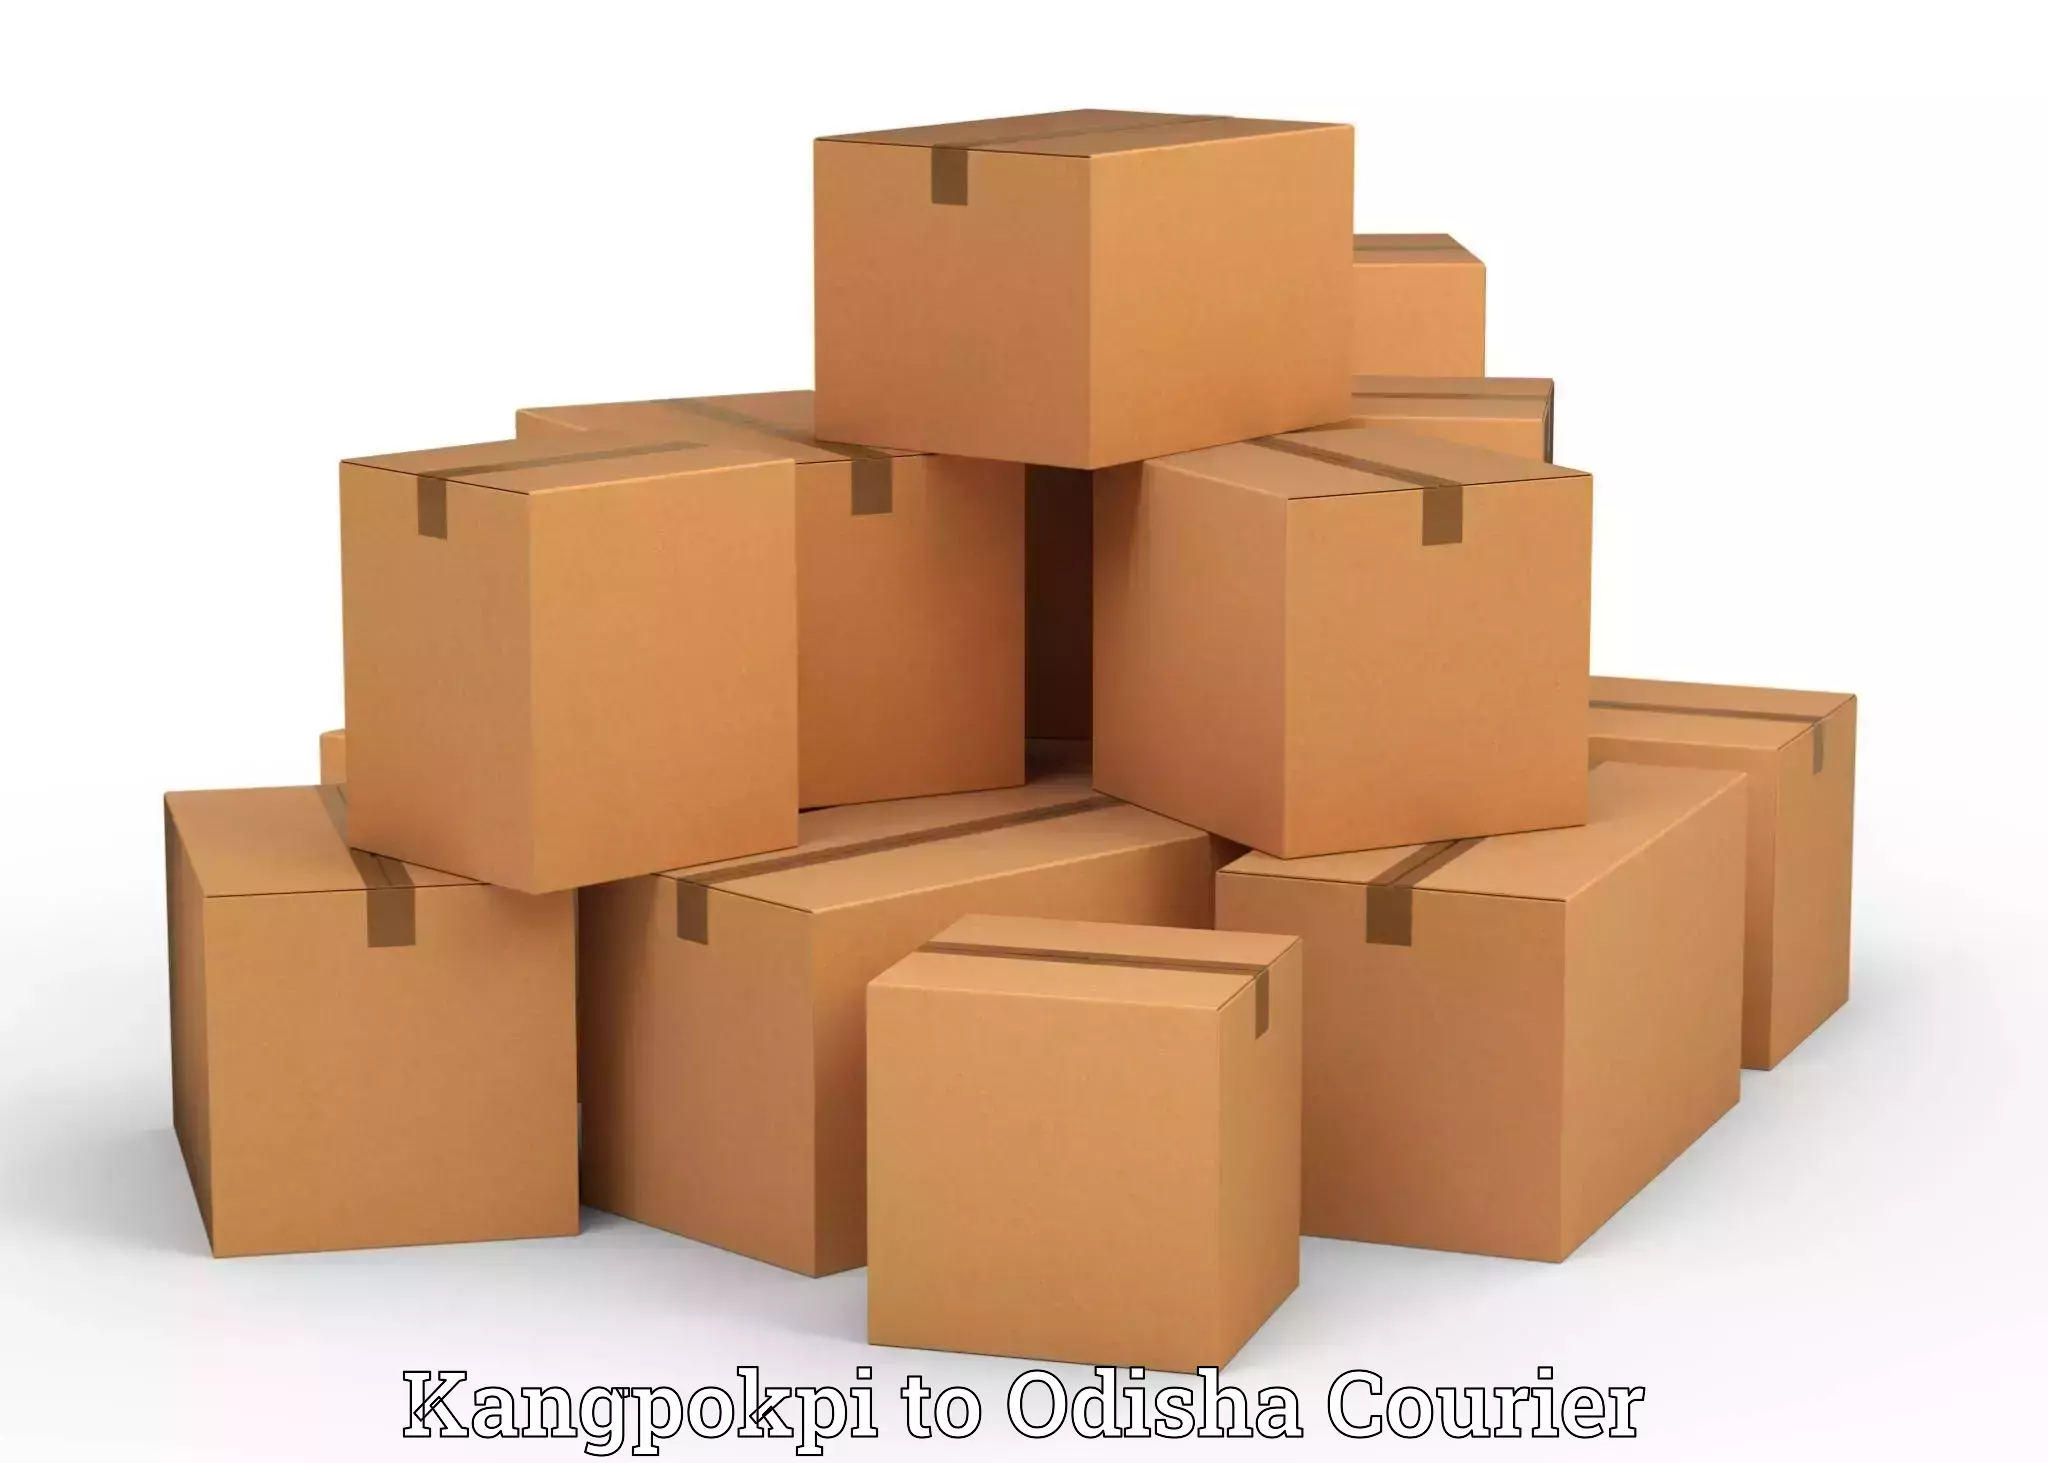 Luggage delivery optimization Kangpokpi to Astaranga